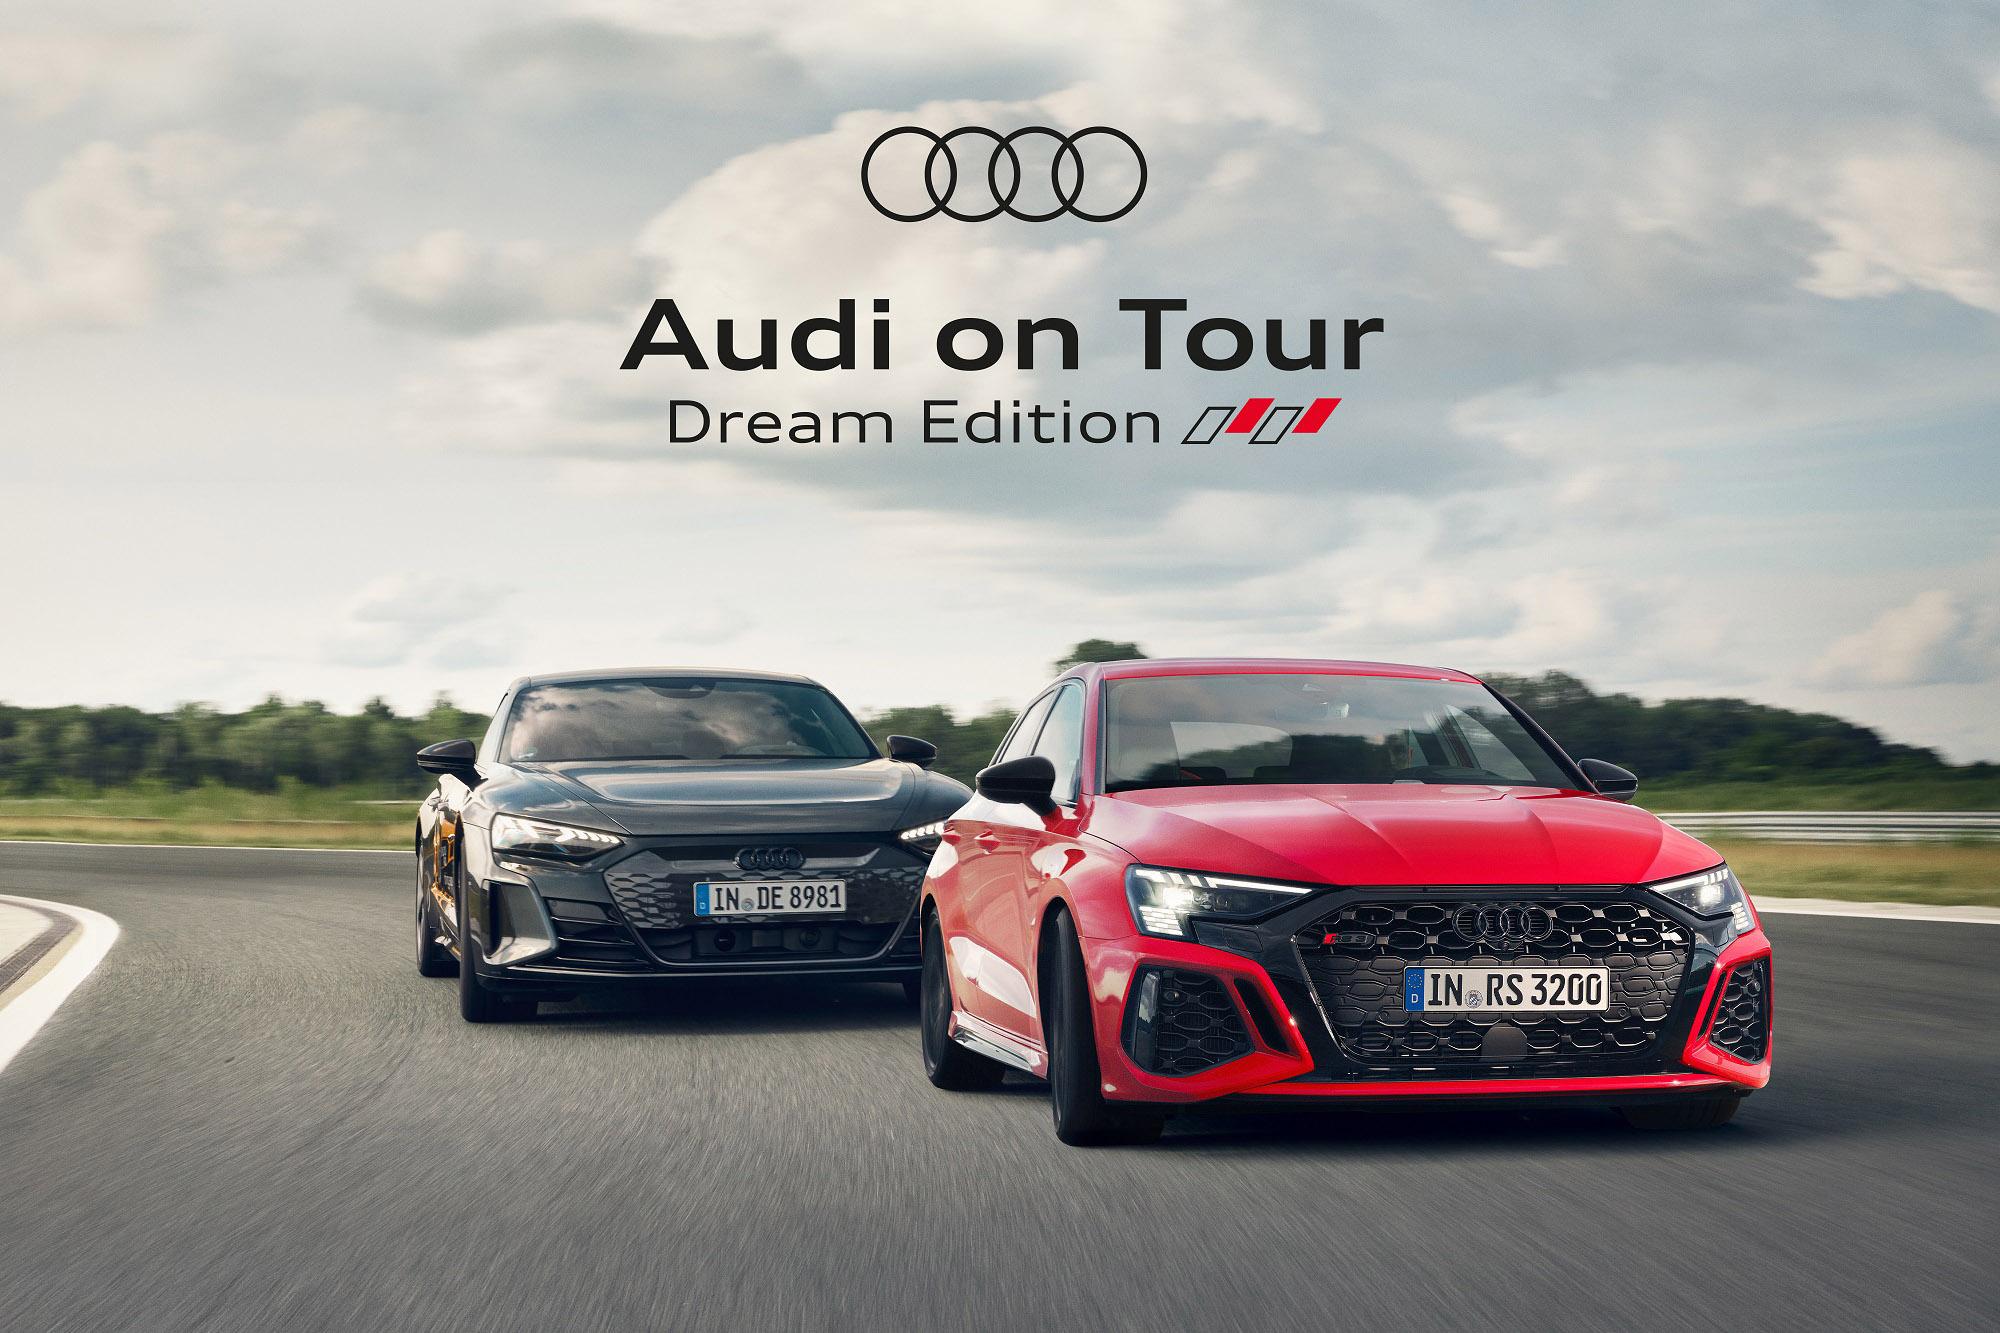 Η Audi παρουσιάζει το Roadshow: Audi on Tour Dream Edition